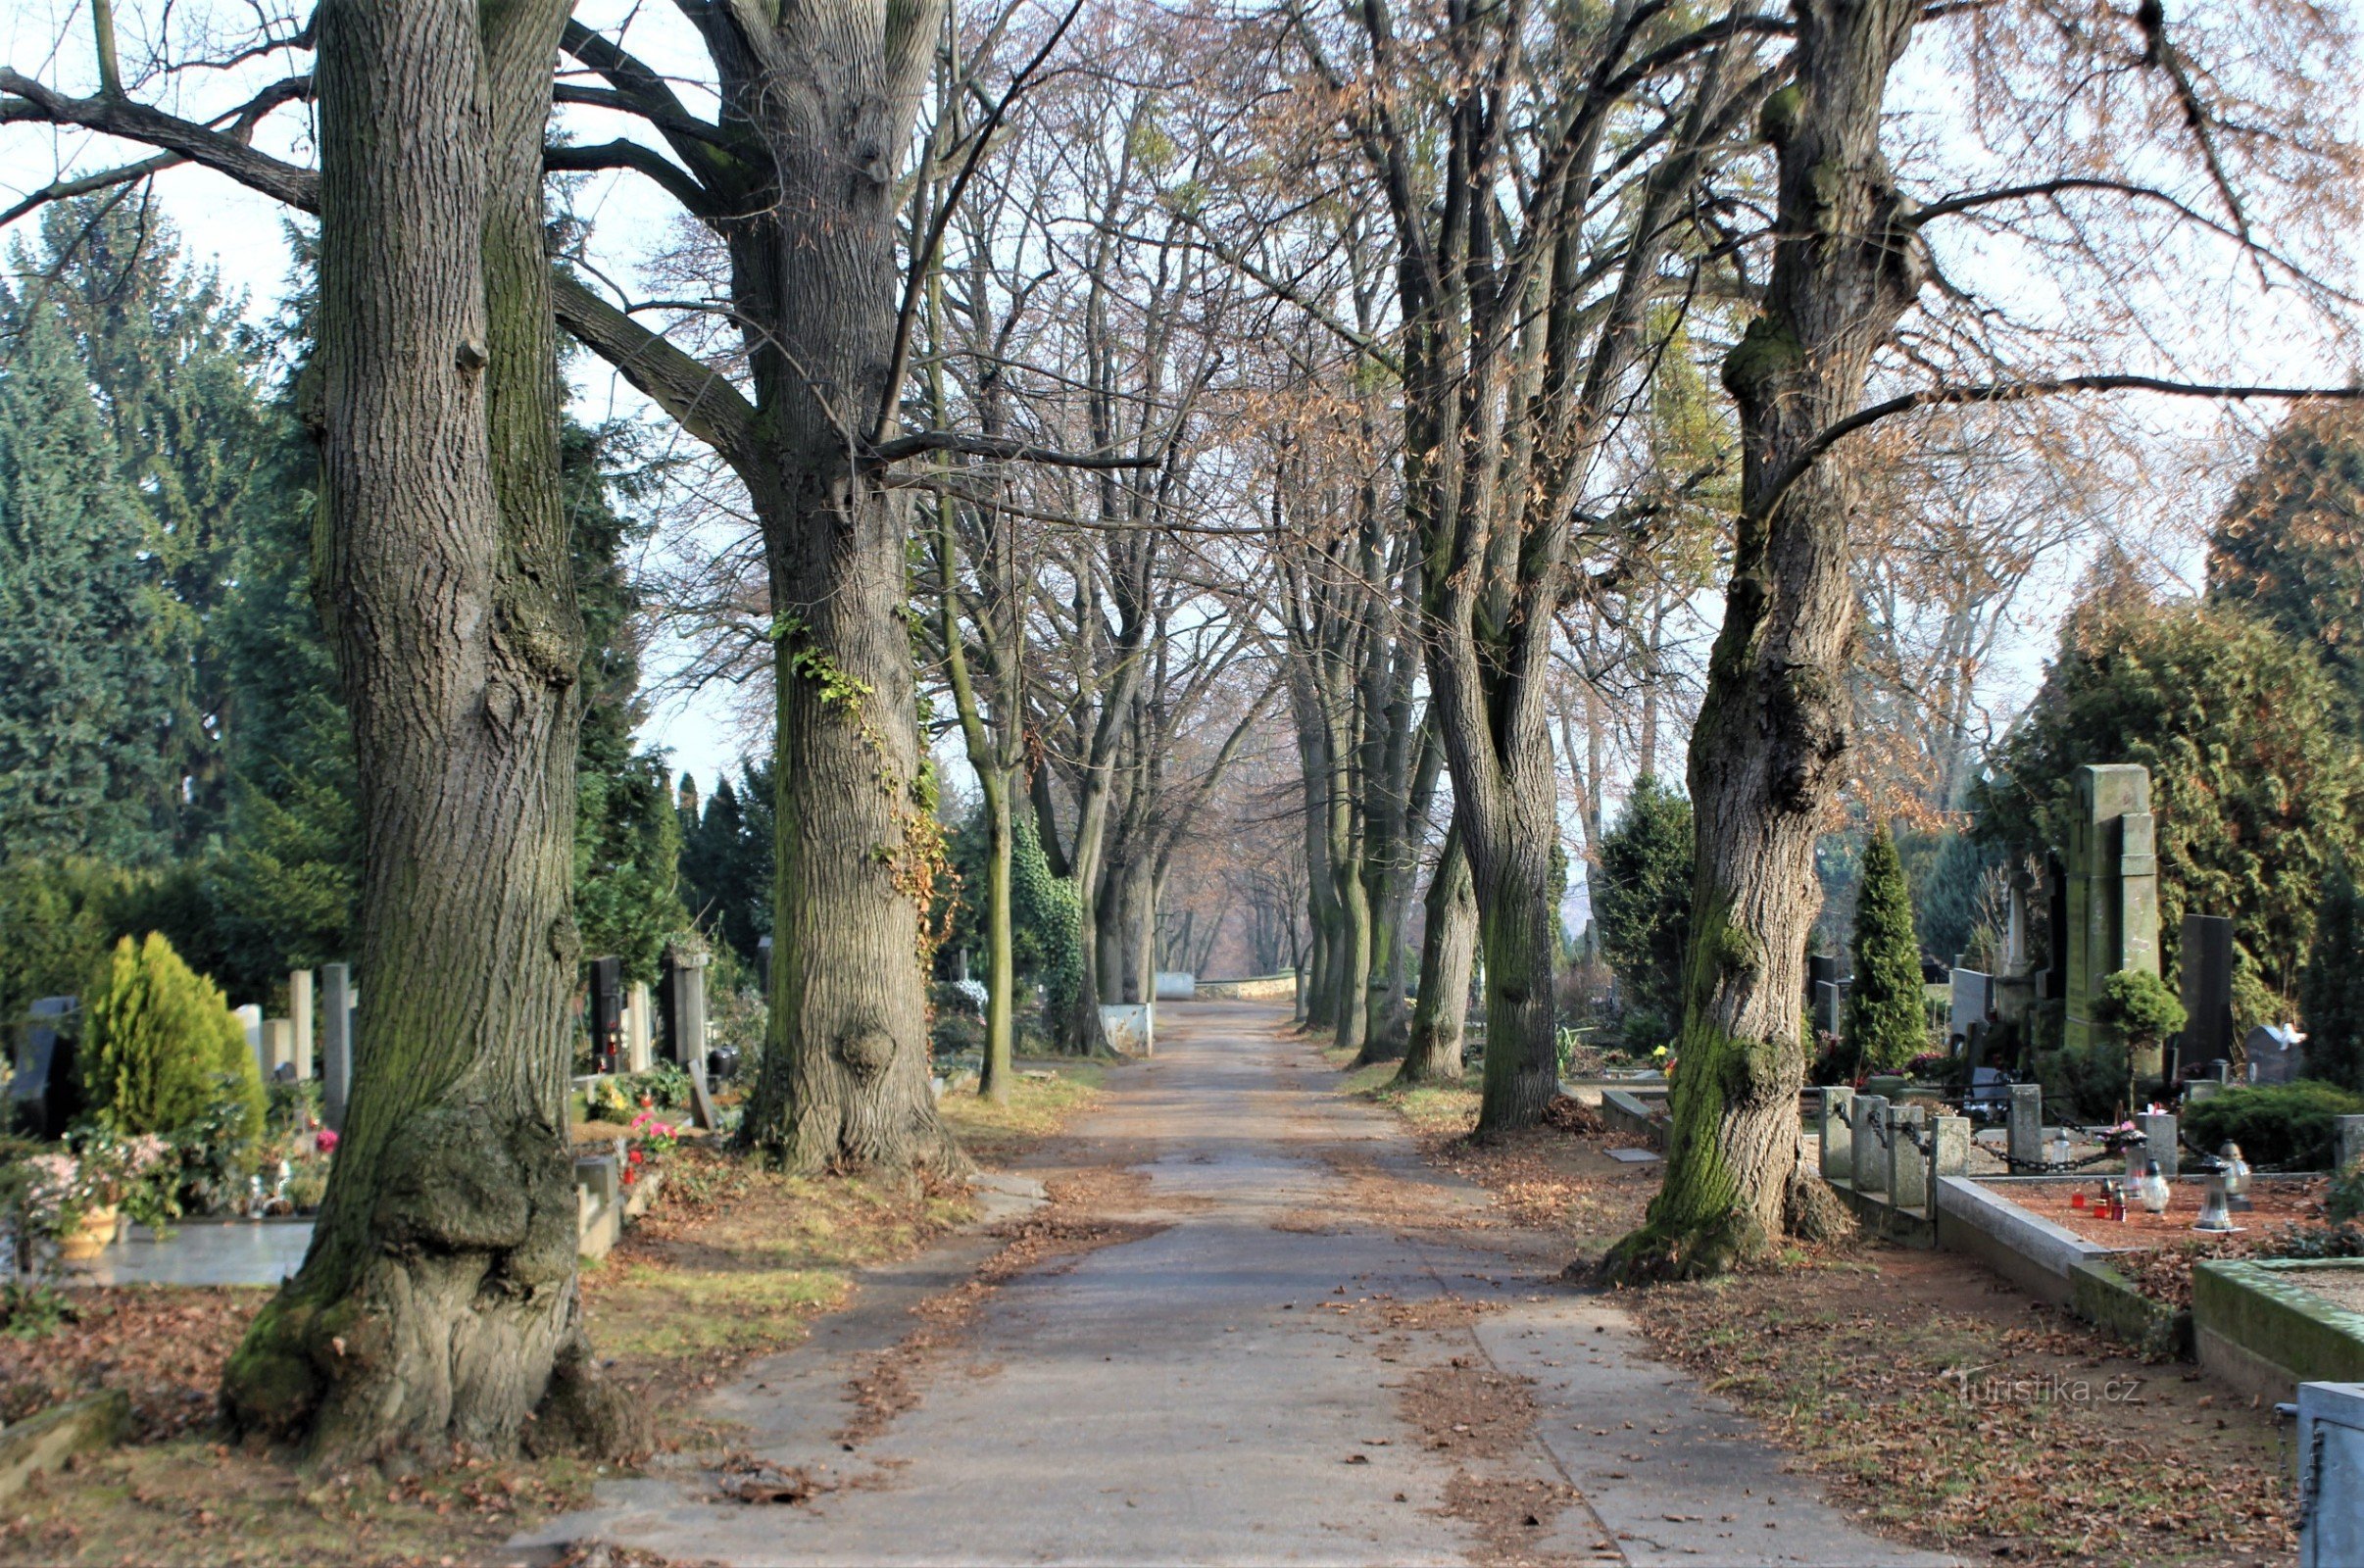 Cmentarz przeplatany jest siecią alejek z dojrzałą zielenią